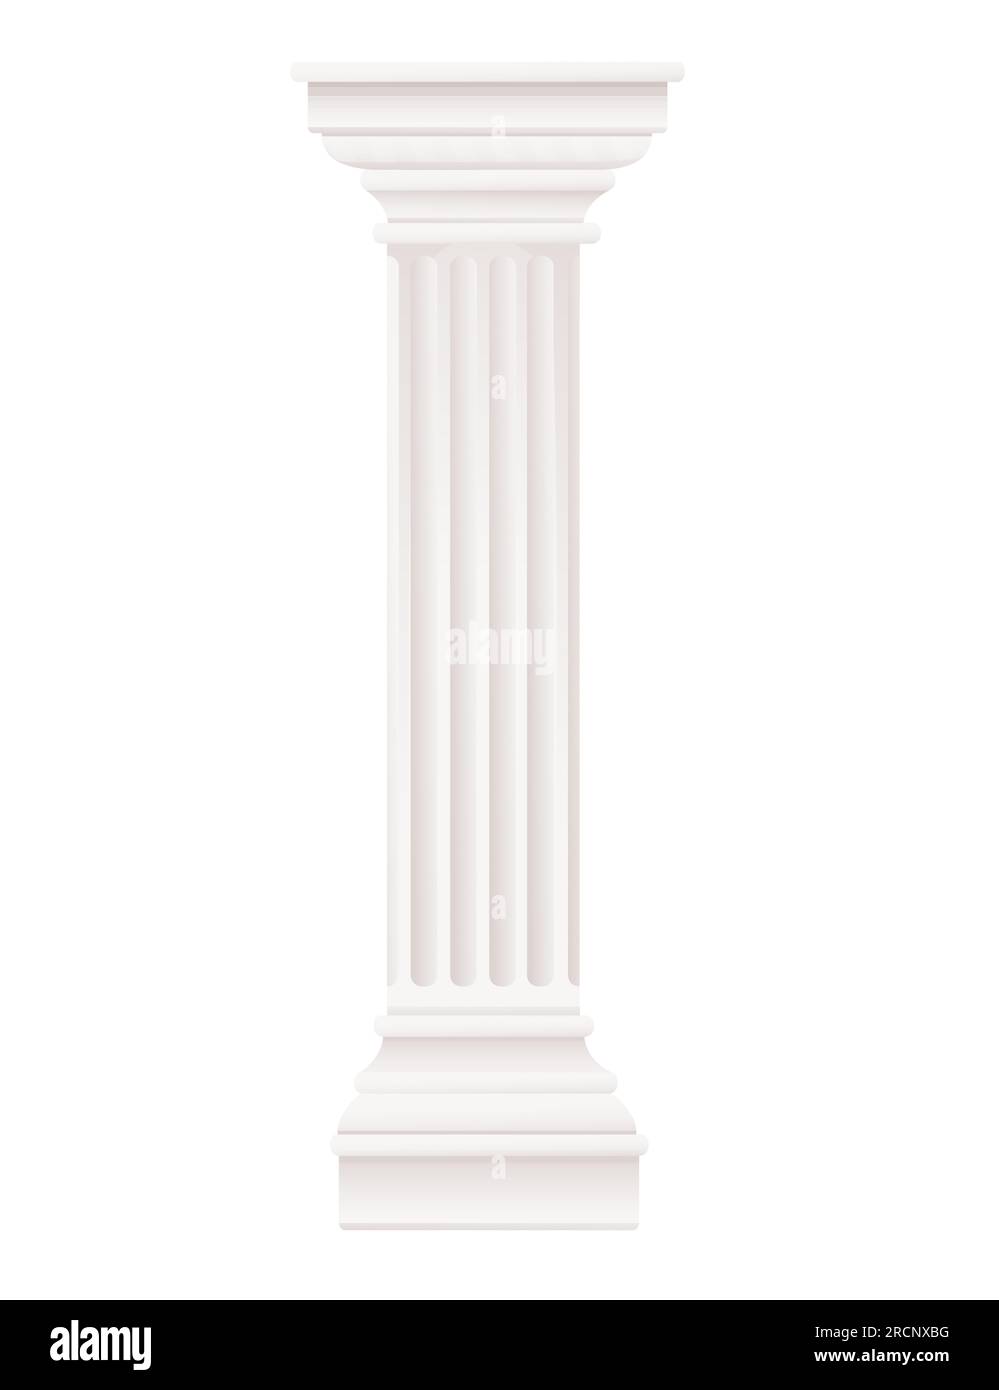 Illustration vectorielle de conception d'architecture classique de colonne de style antique blanche isolée sur fond blanc Illustration de Vecteur